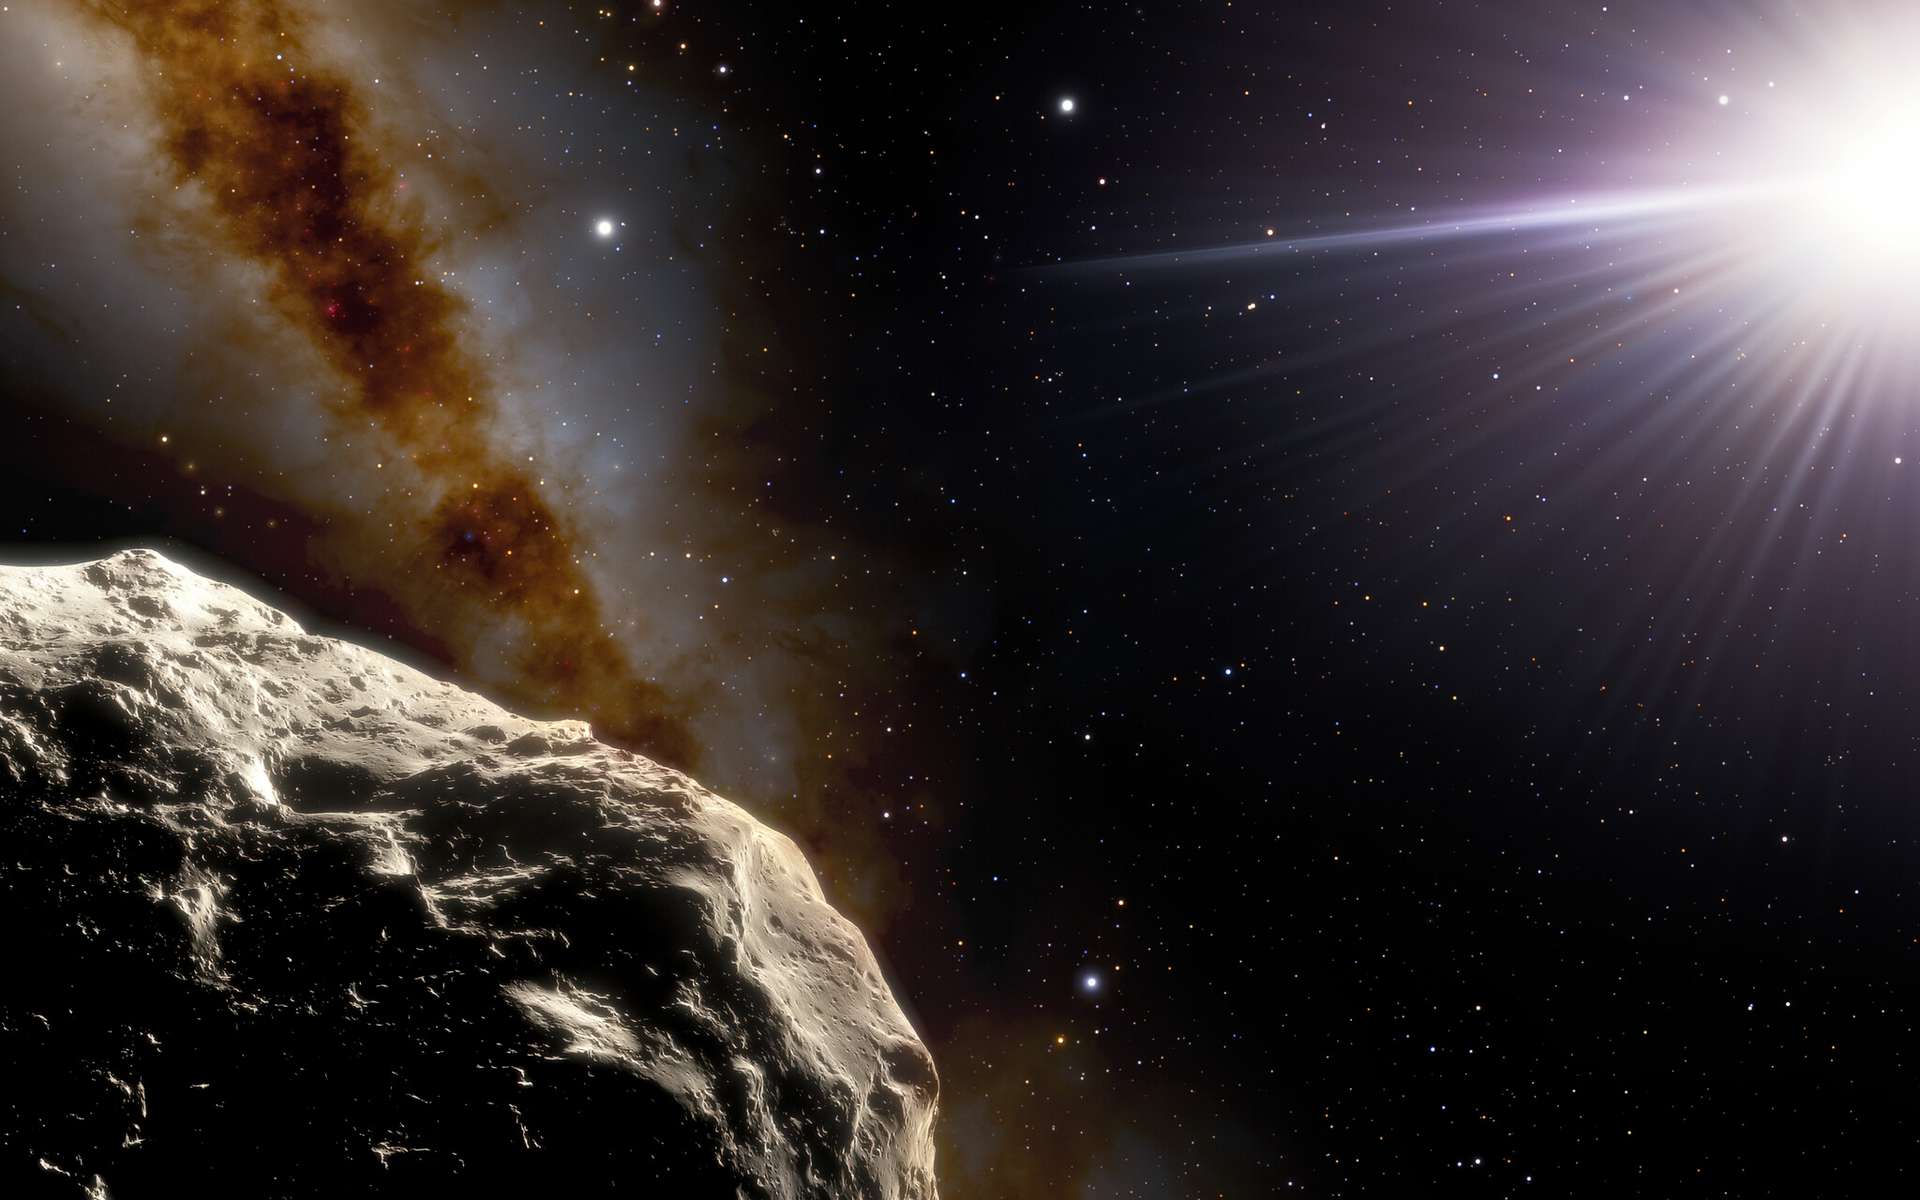 À l'aide du télescope SOAR (Southern Astrophysical Research) de 4,1 mètres sur le Cerro Pachón au Chili, les astronomes ont confirmé qu'un astéroïde découvert en 2020 par l'enquête Pan-STARRS1, appelé 2020 XL5, est bien un troyen. Dans cette illustration, l'astéroïde est représenté au premier plan en bas à gauche. Les deux points brillants au-dessus à l'extrême gauche sont la Terre (à droite) et la Lune (à gauche). Le Soleil apparaît à droite. © NOIRLab, NSF, AURA, J. Da Silva